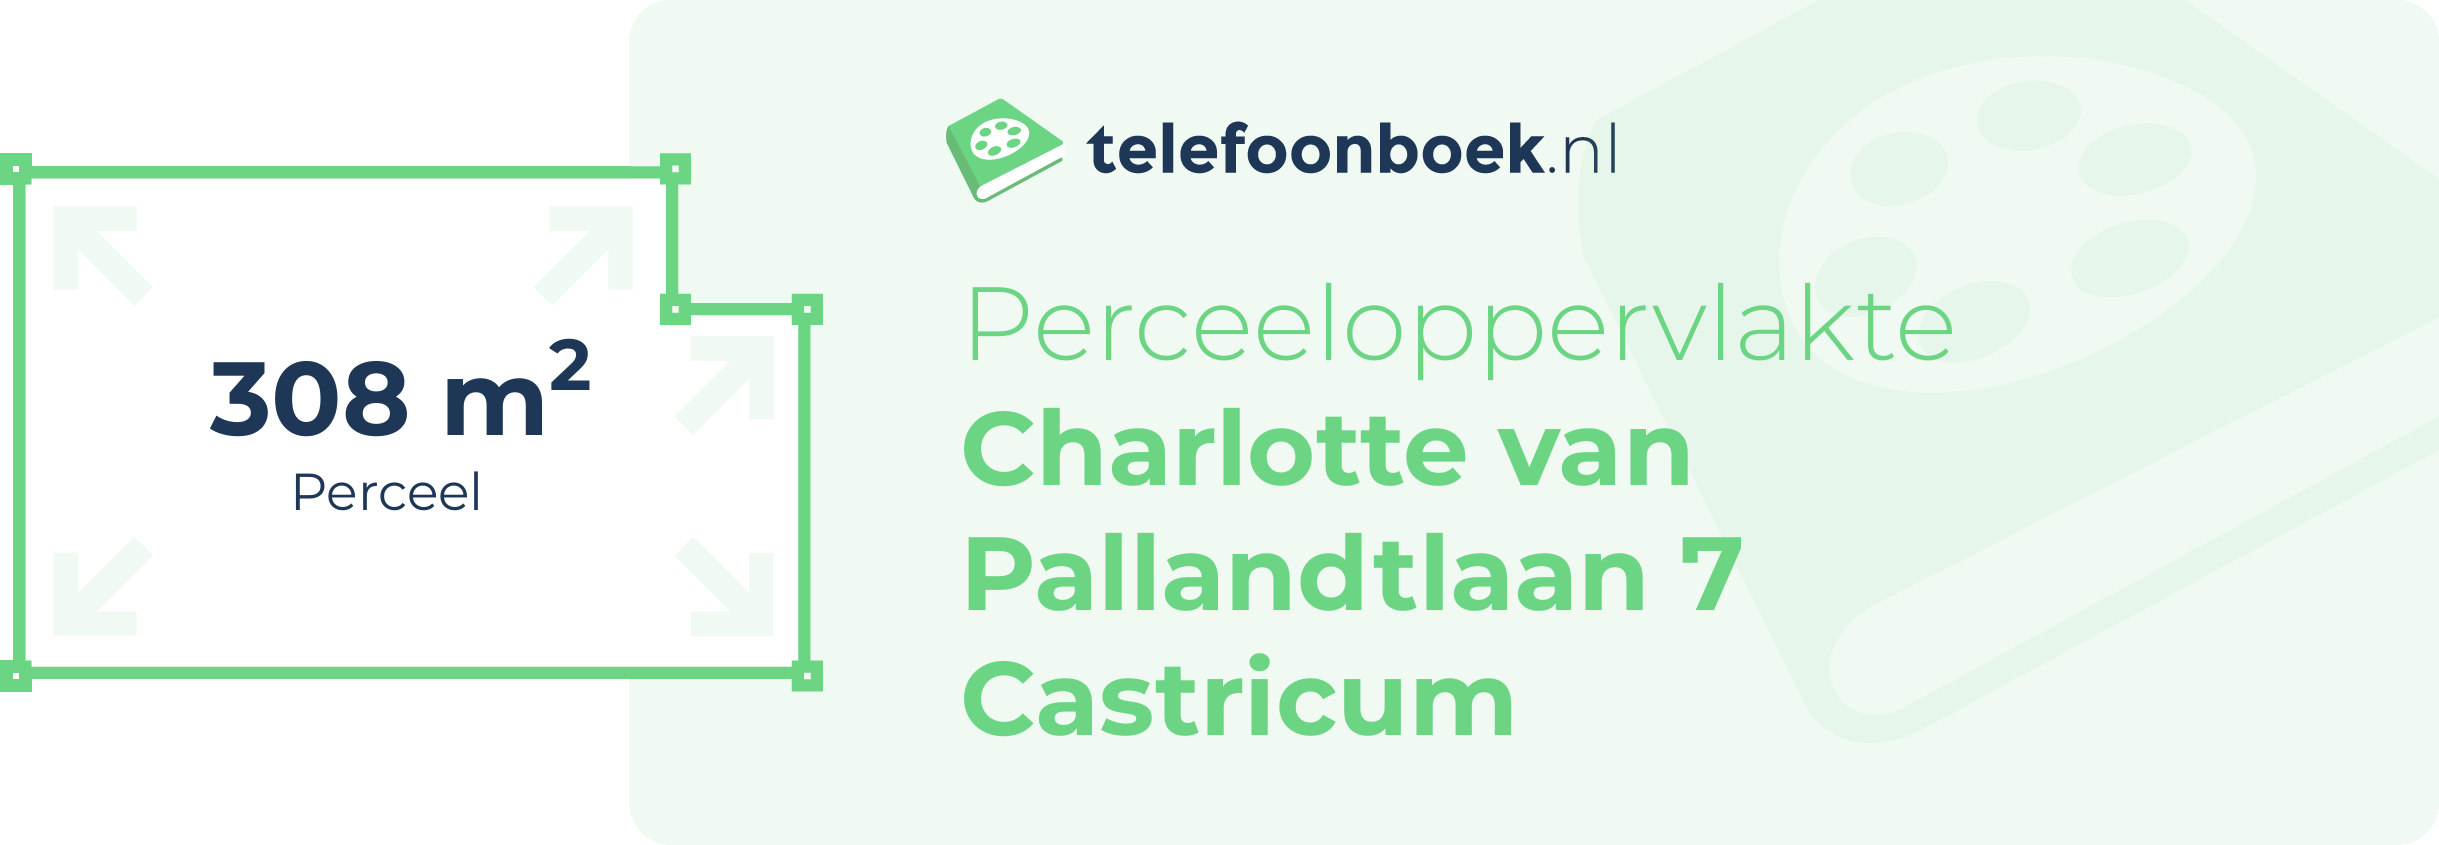 Perceeloppervlakte Charlotte Van Pallandtlaan 7 Castricum